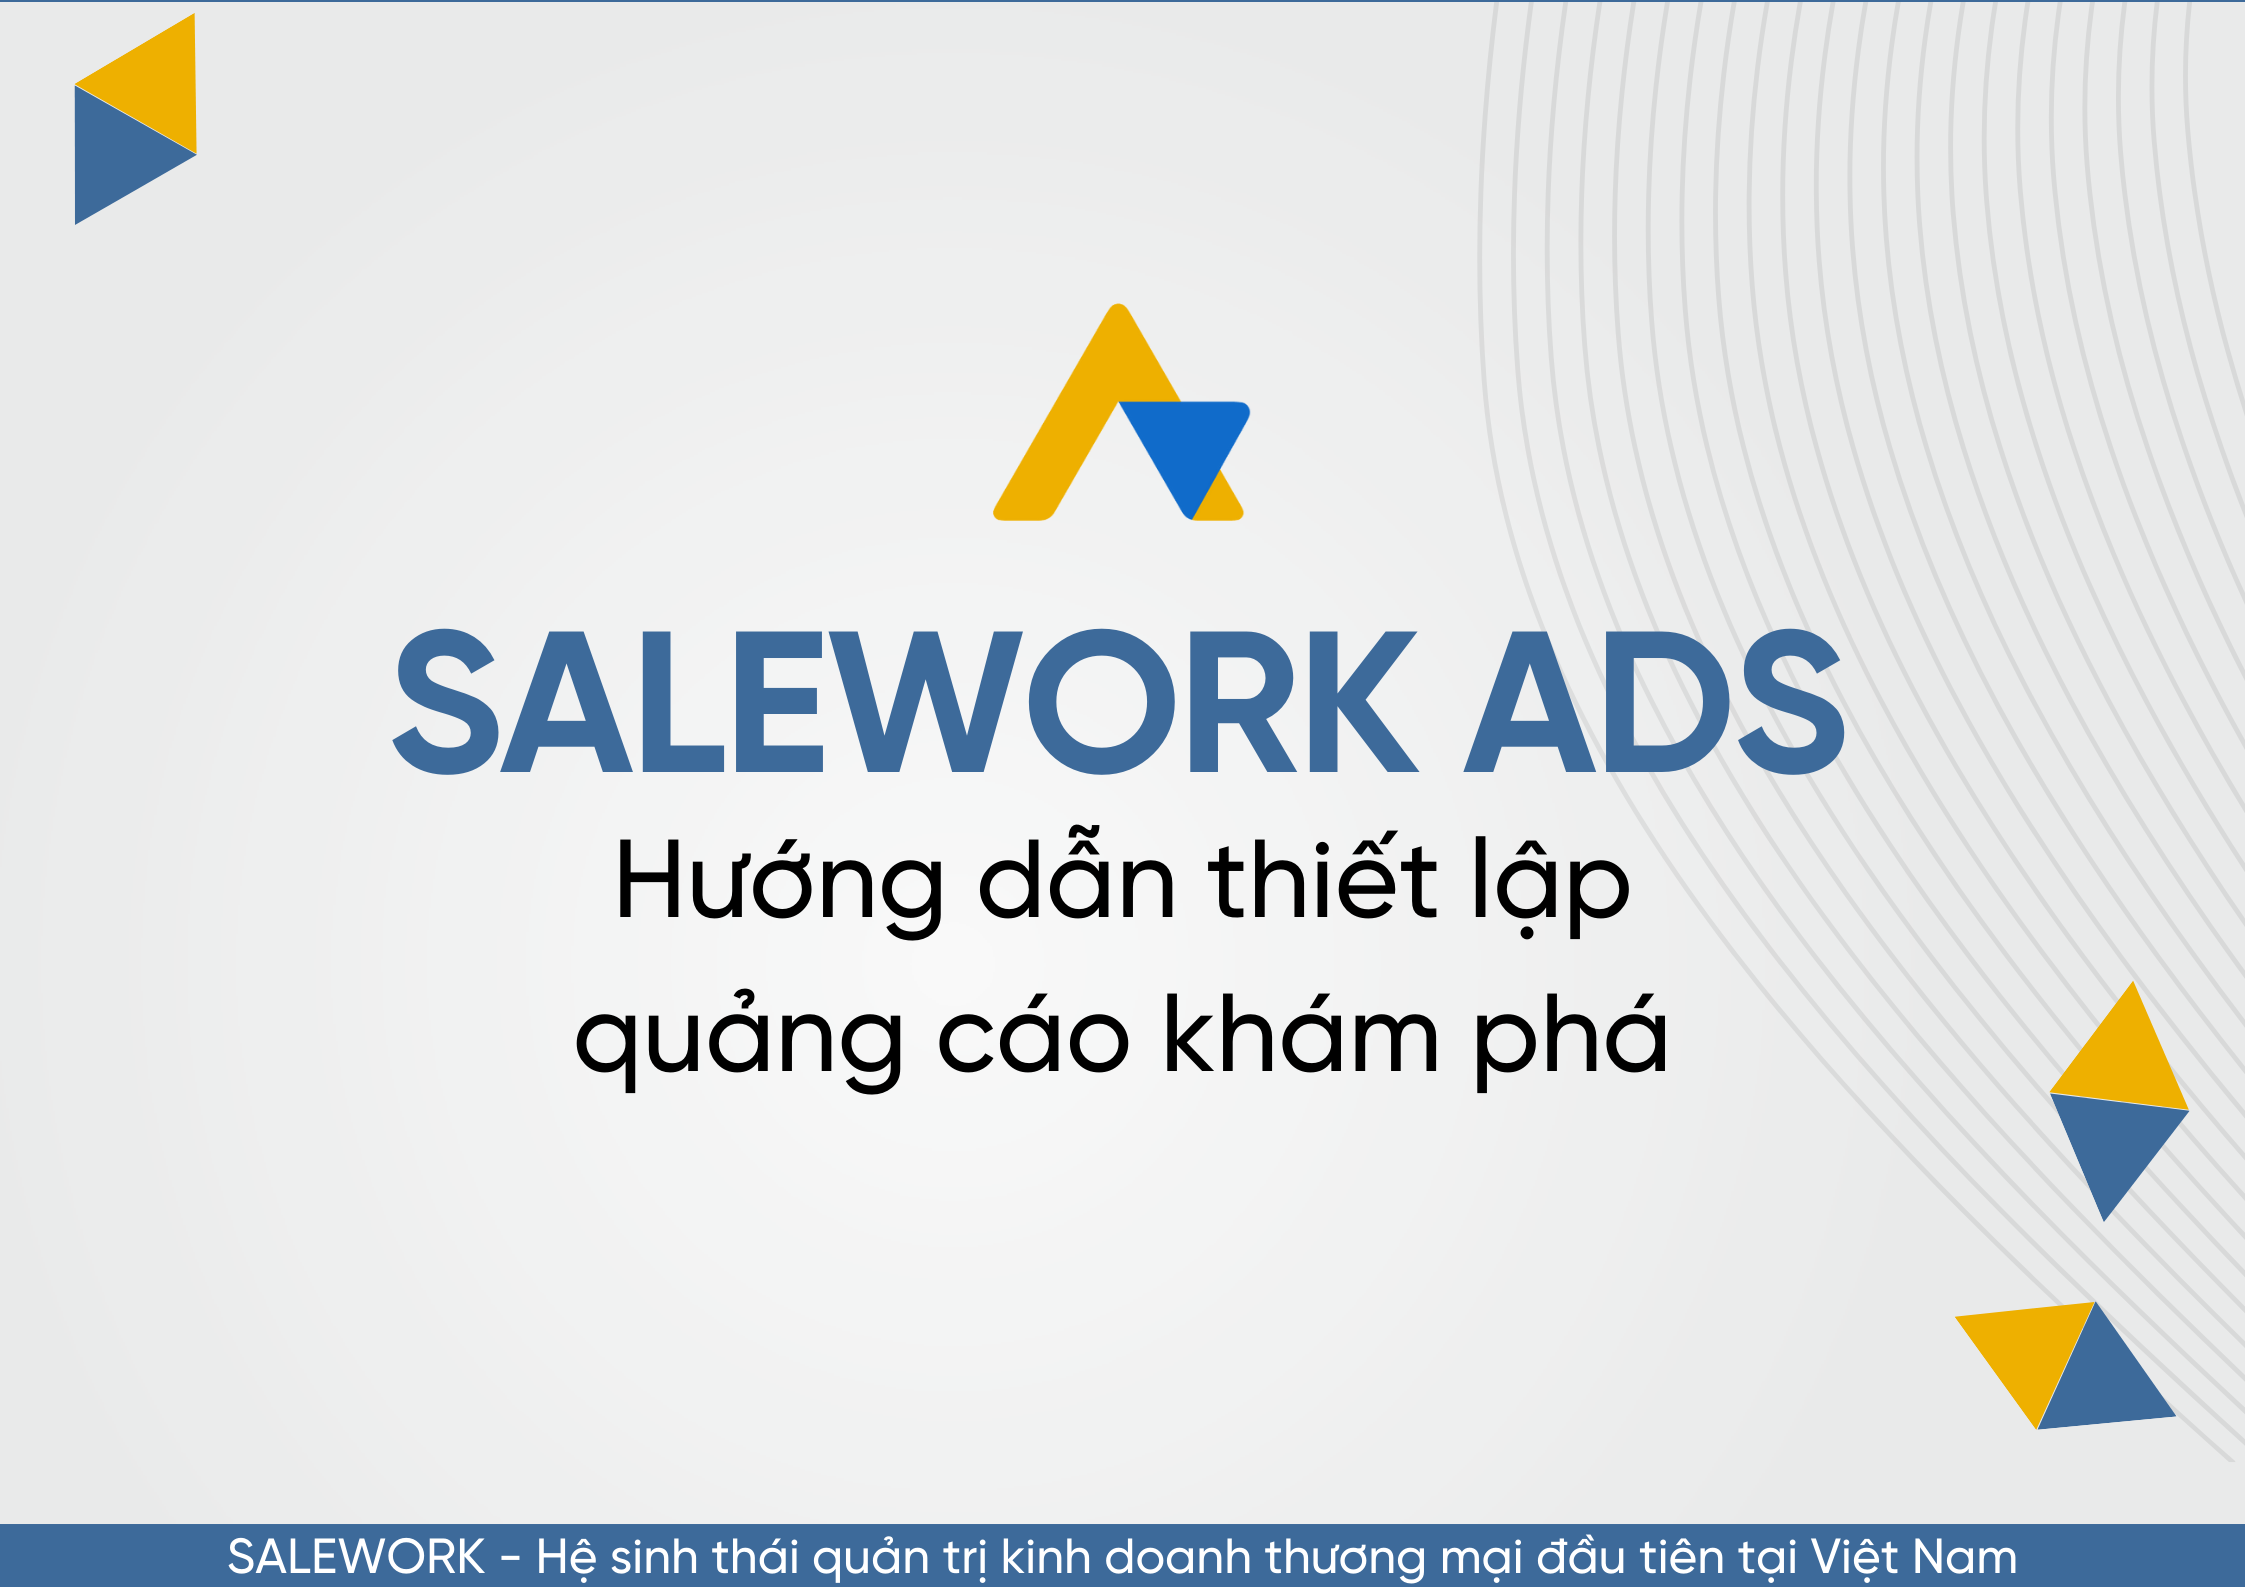 Hướng dẫn thiết lập quảng cáo khám phá tại Salework Ads - 27